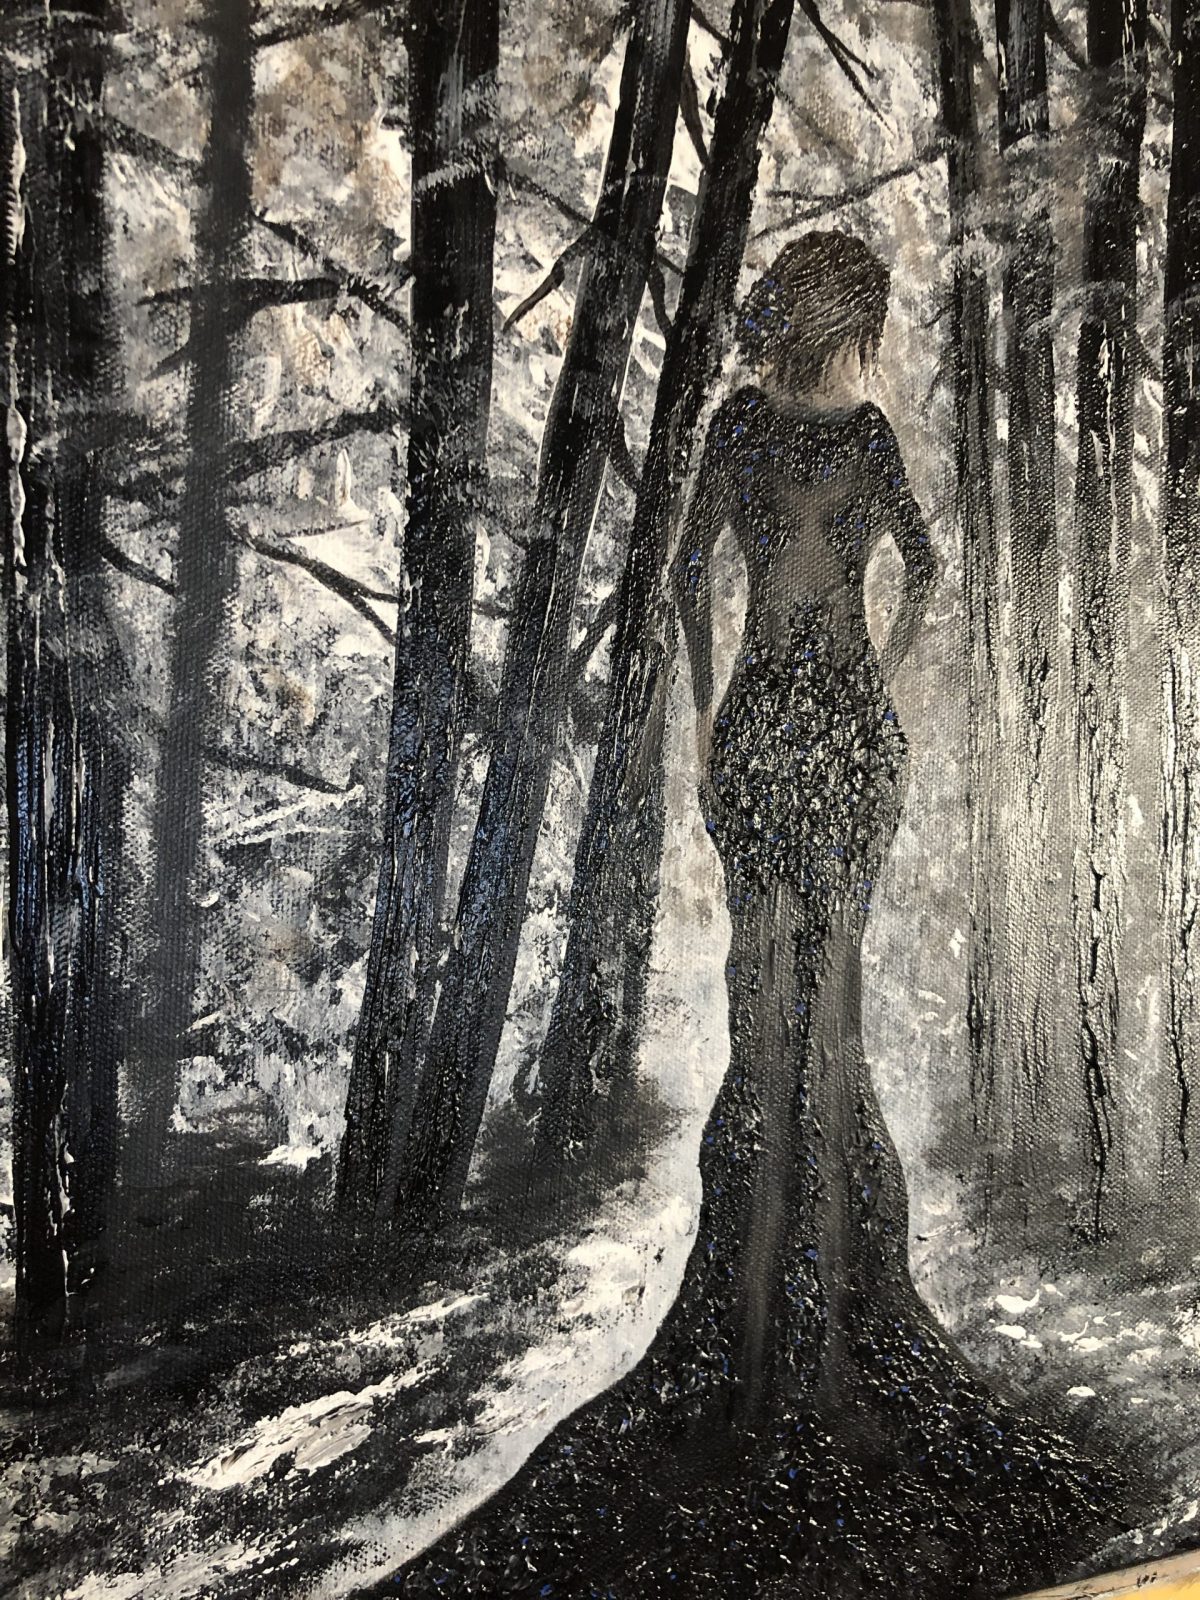 "La veuve noire" le plan sur la femme s'avancant dans la forêt - La veuve noire - peinture acrylique réalisé au couteau présentant une veuve noire entrant dans une forêt en noir et blanc